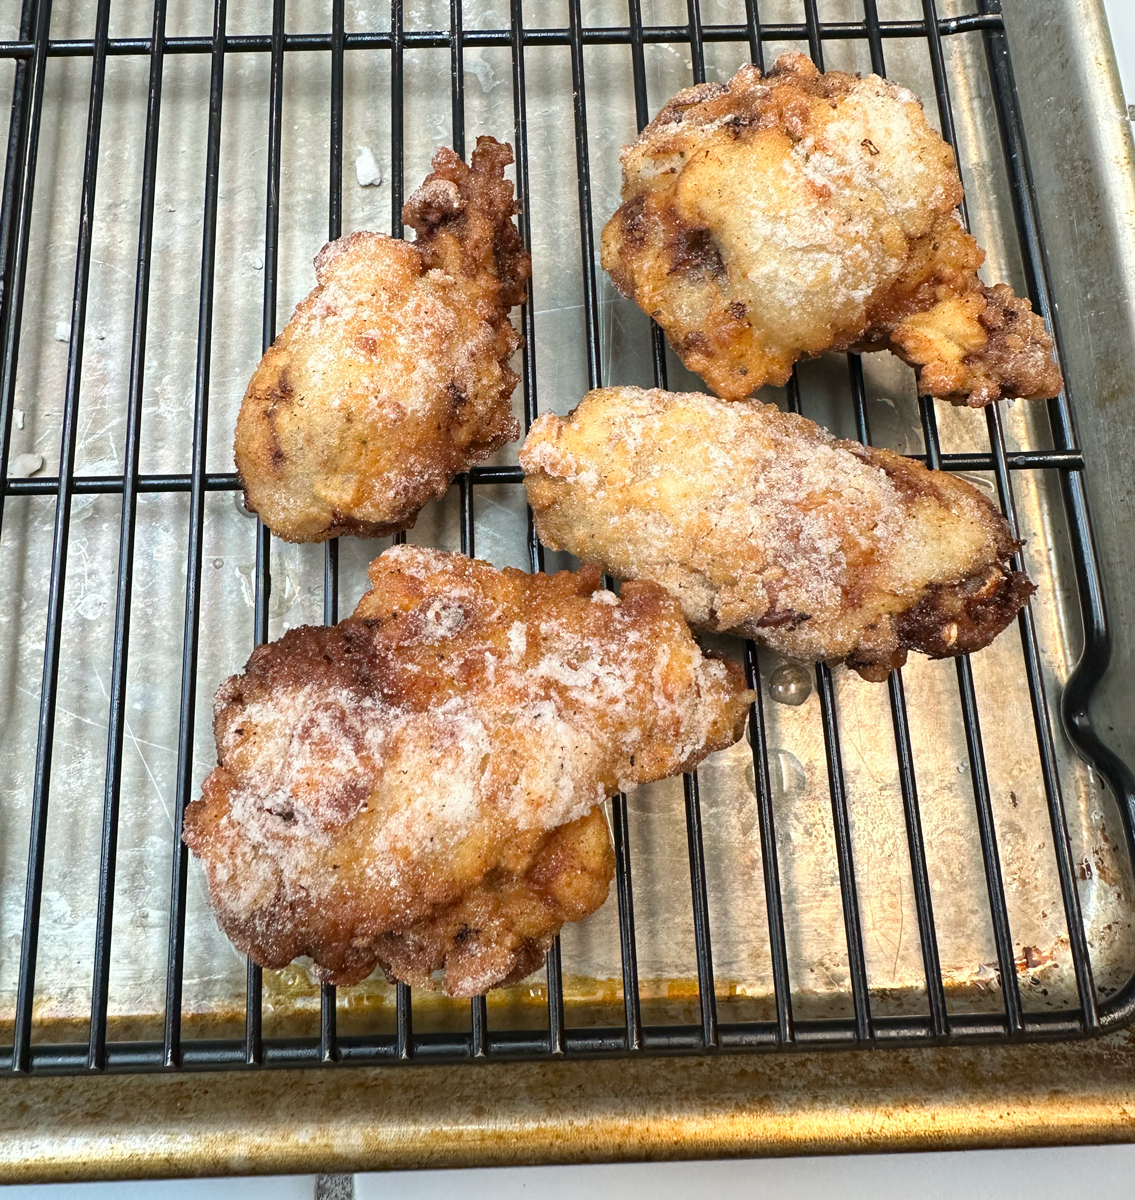 Fried wings 2